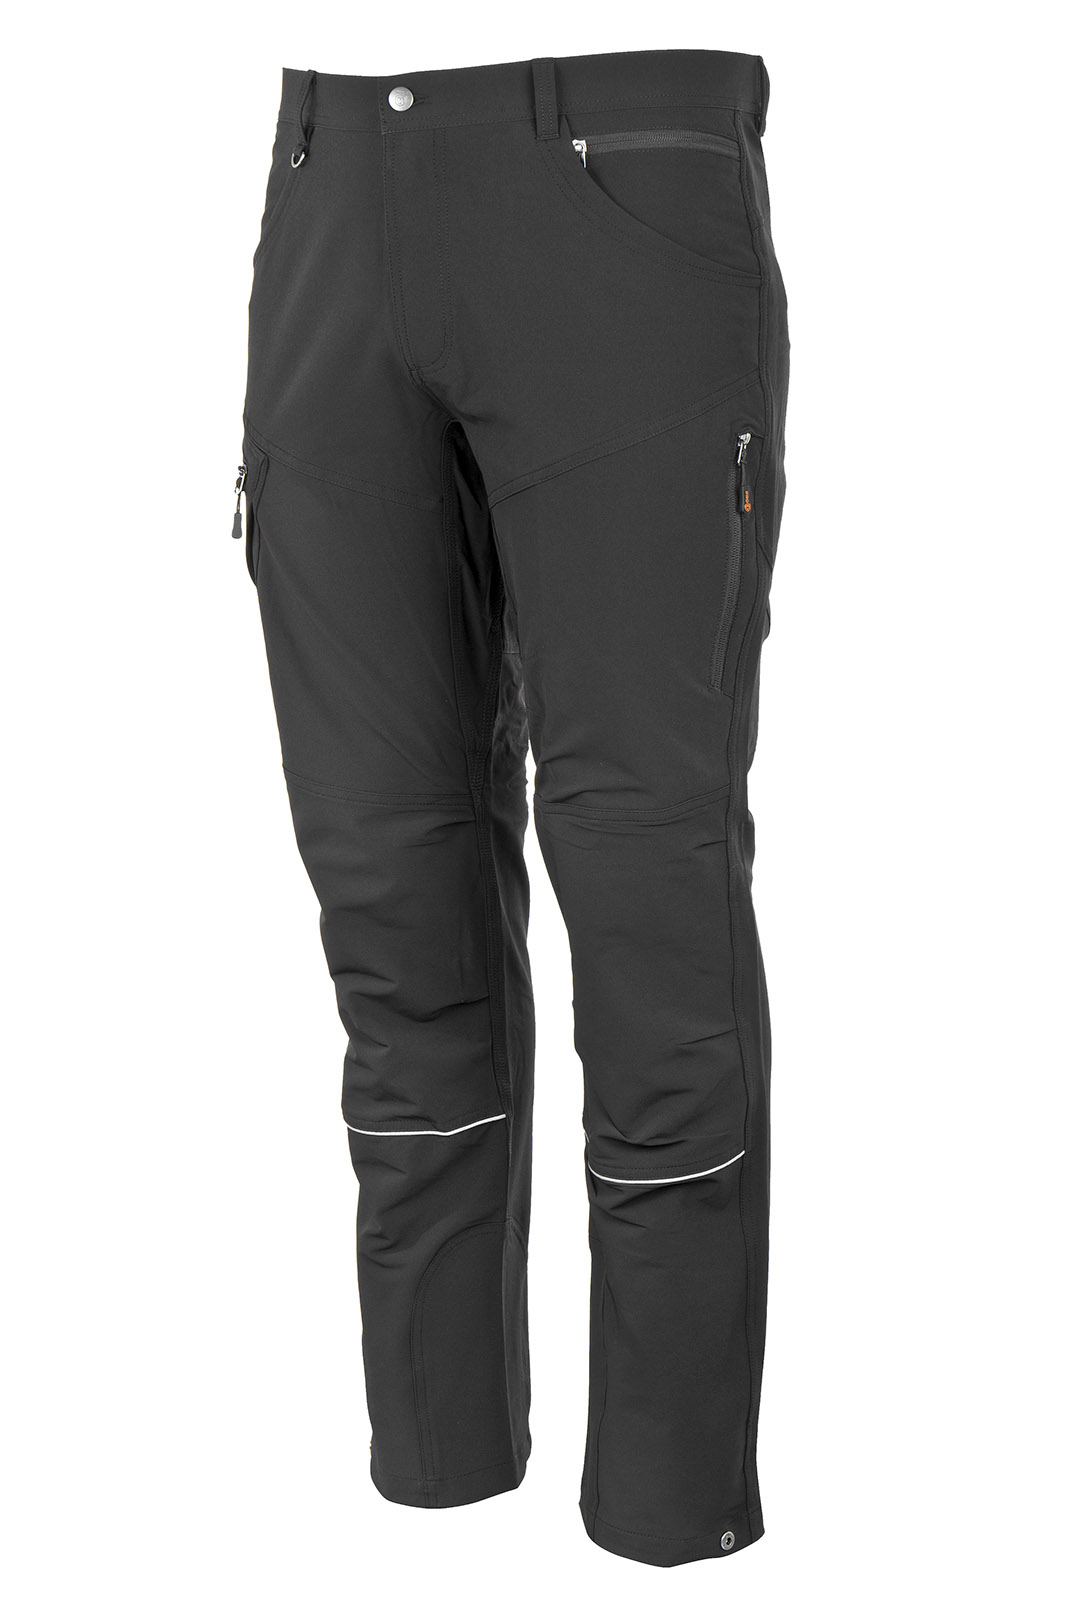 Promacher Outdoorové strečové kalhoty FOBOS TROUSERS BLACK vel.48